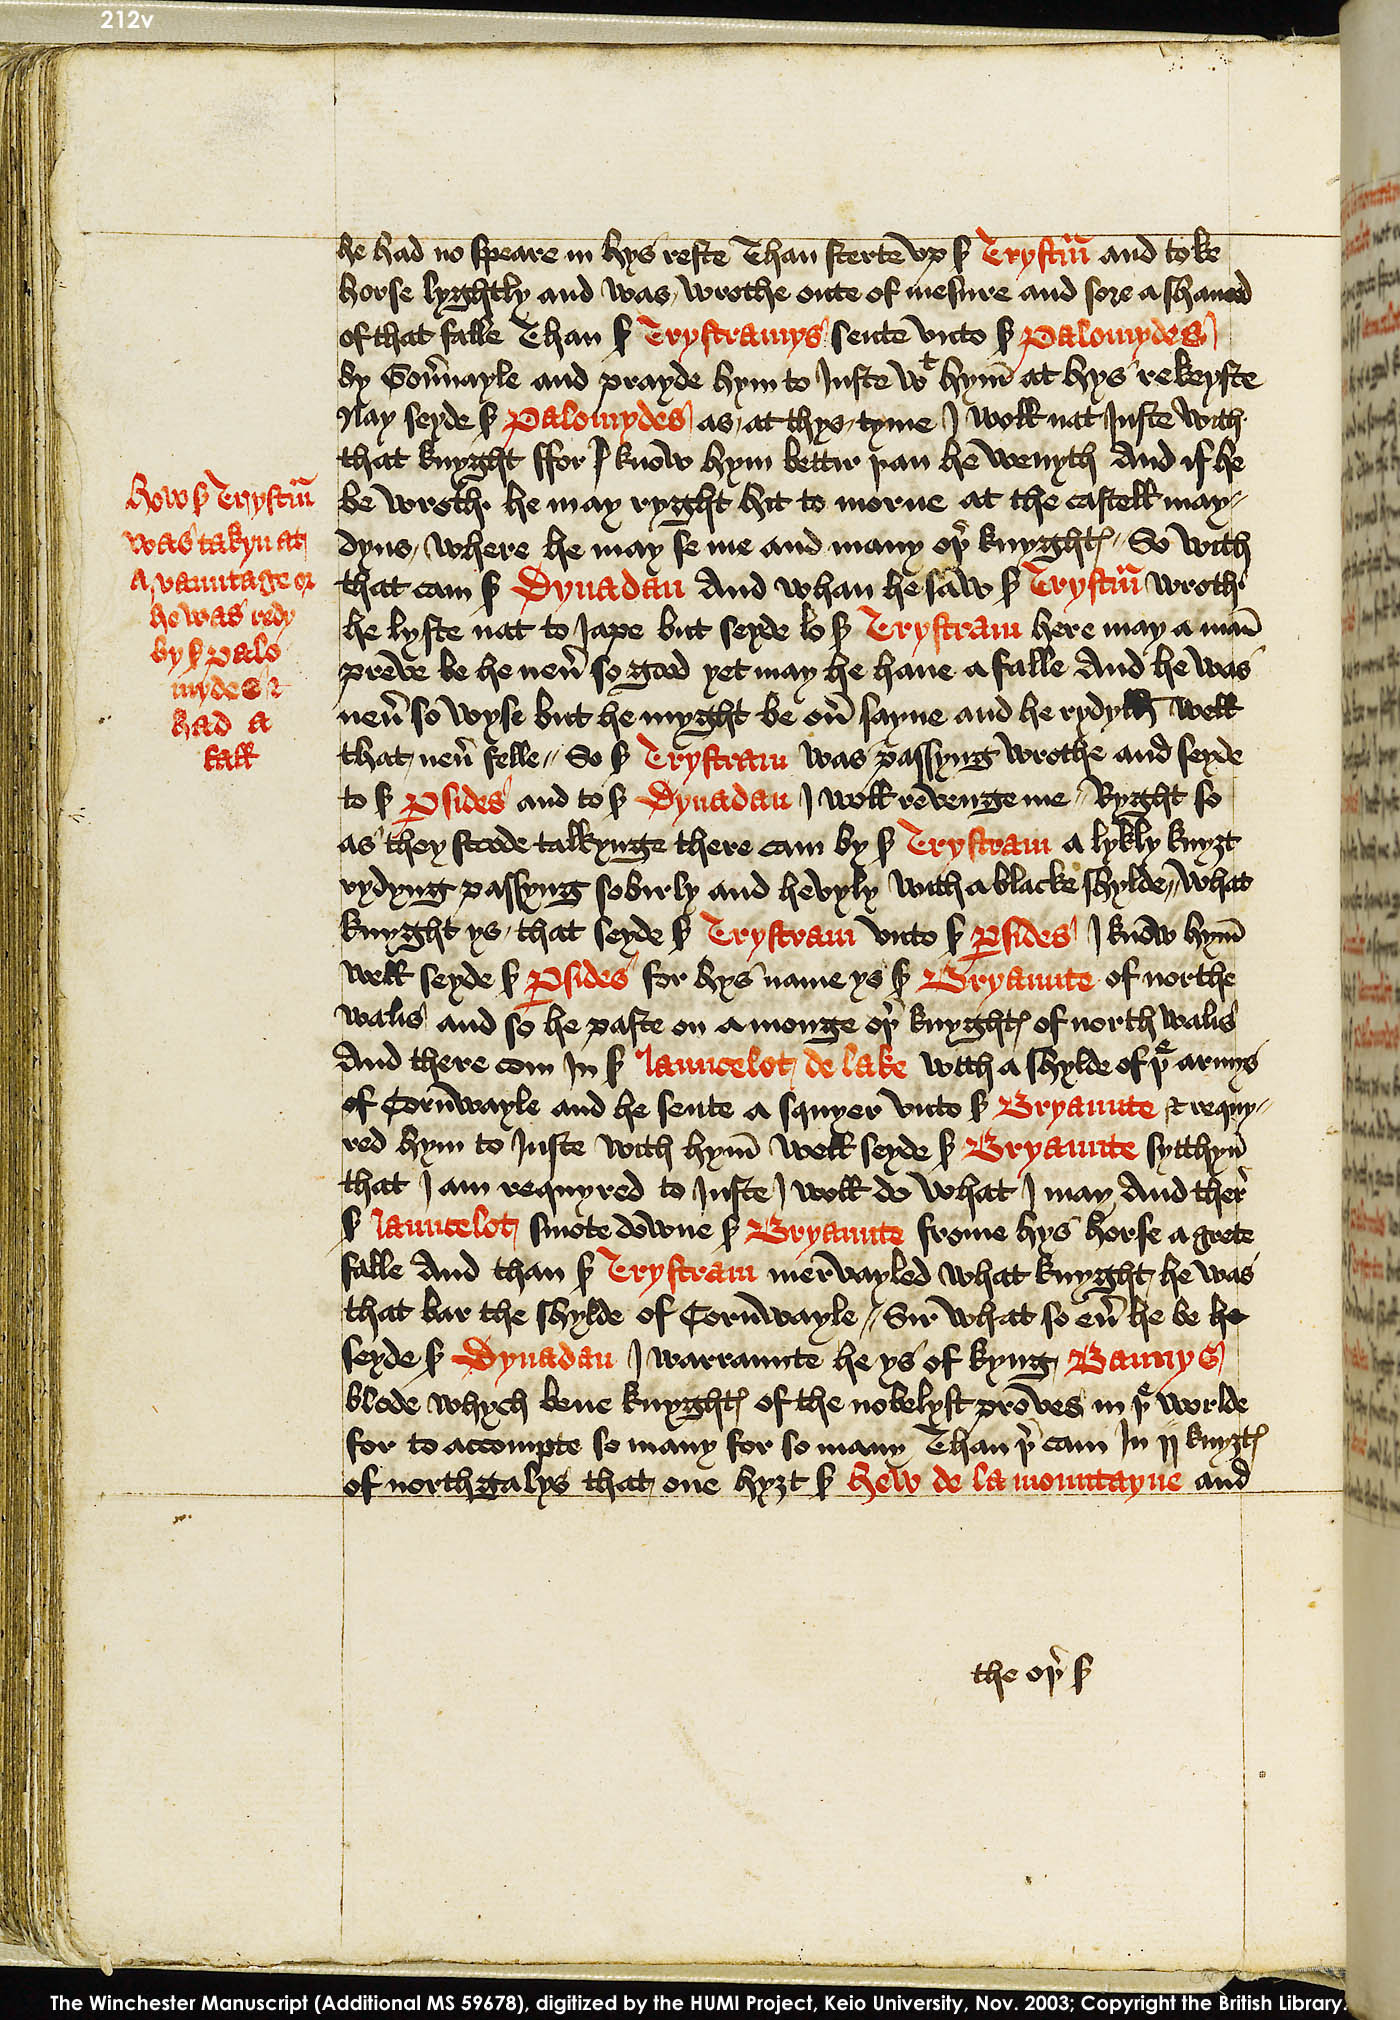 Folio 212v